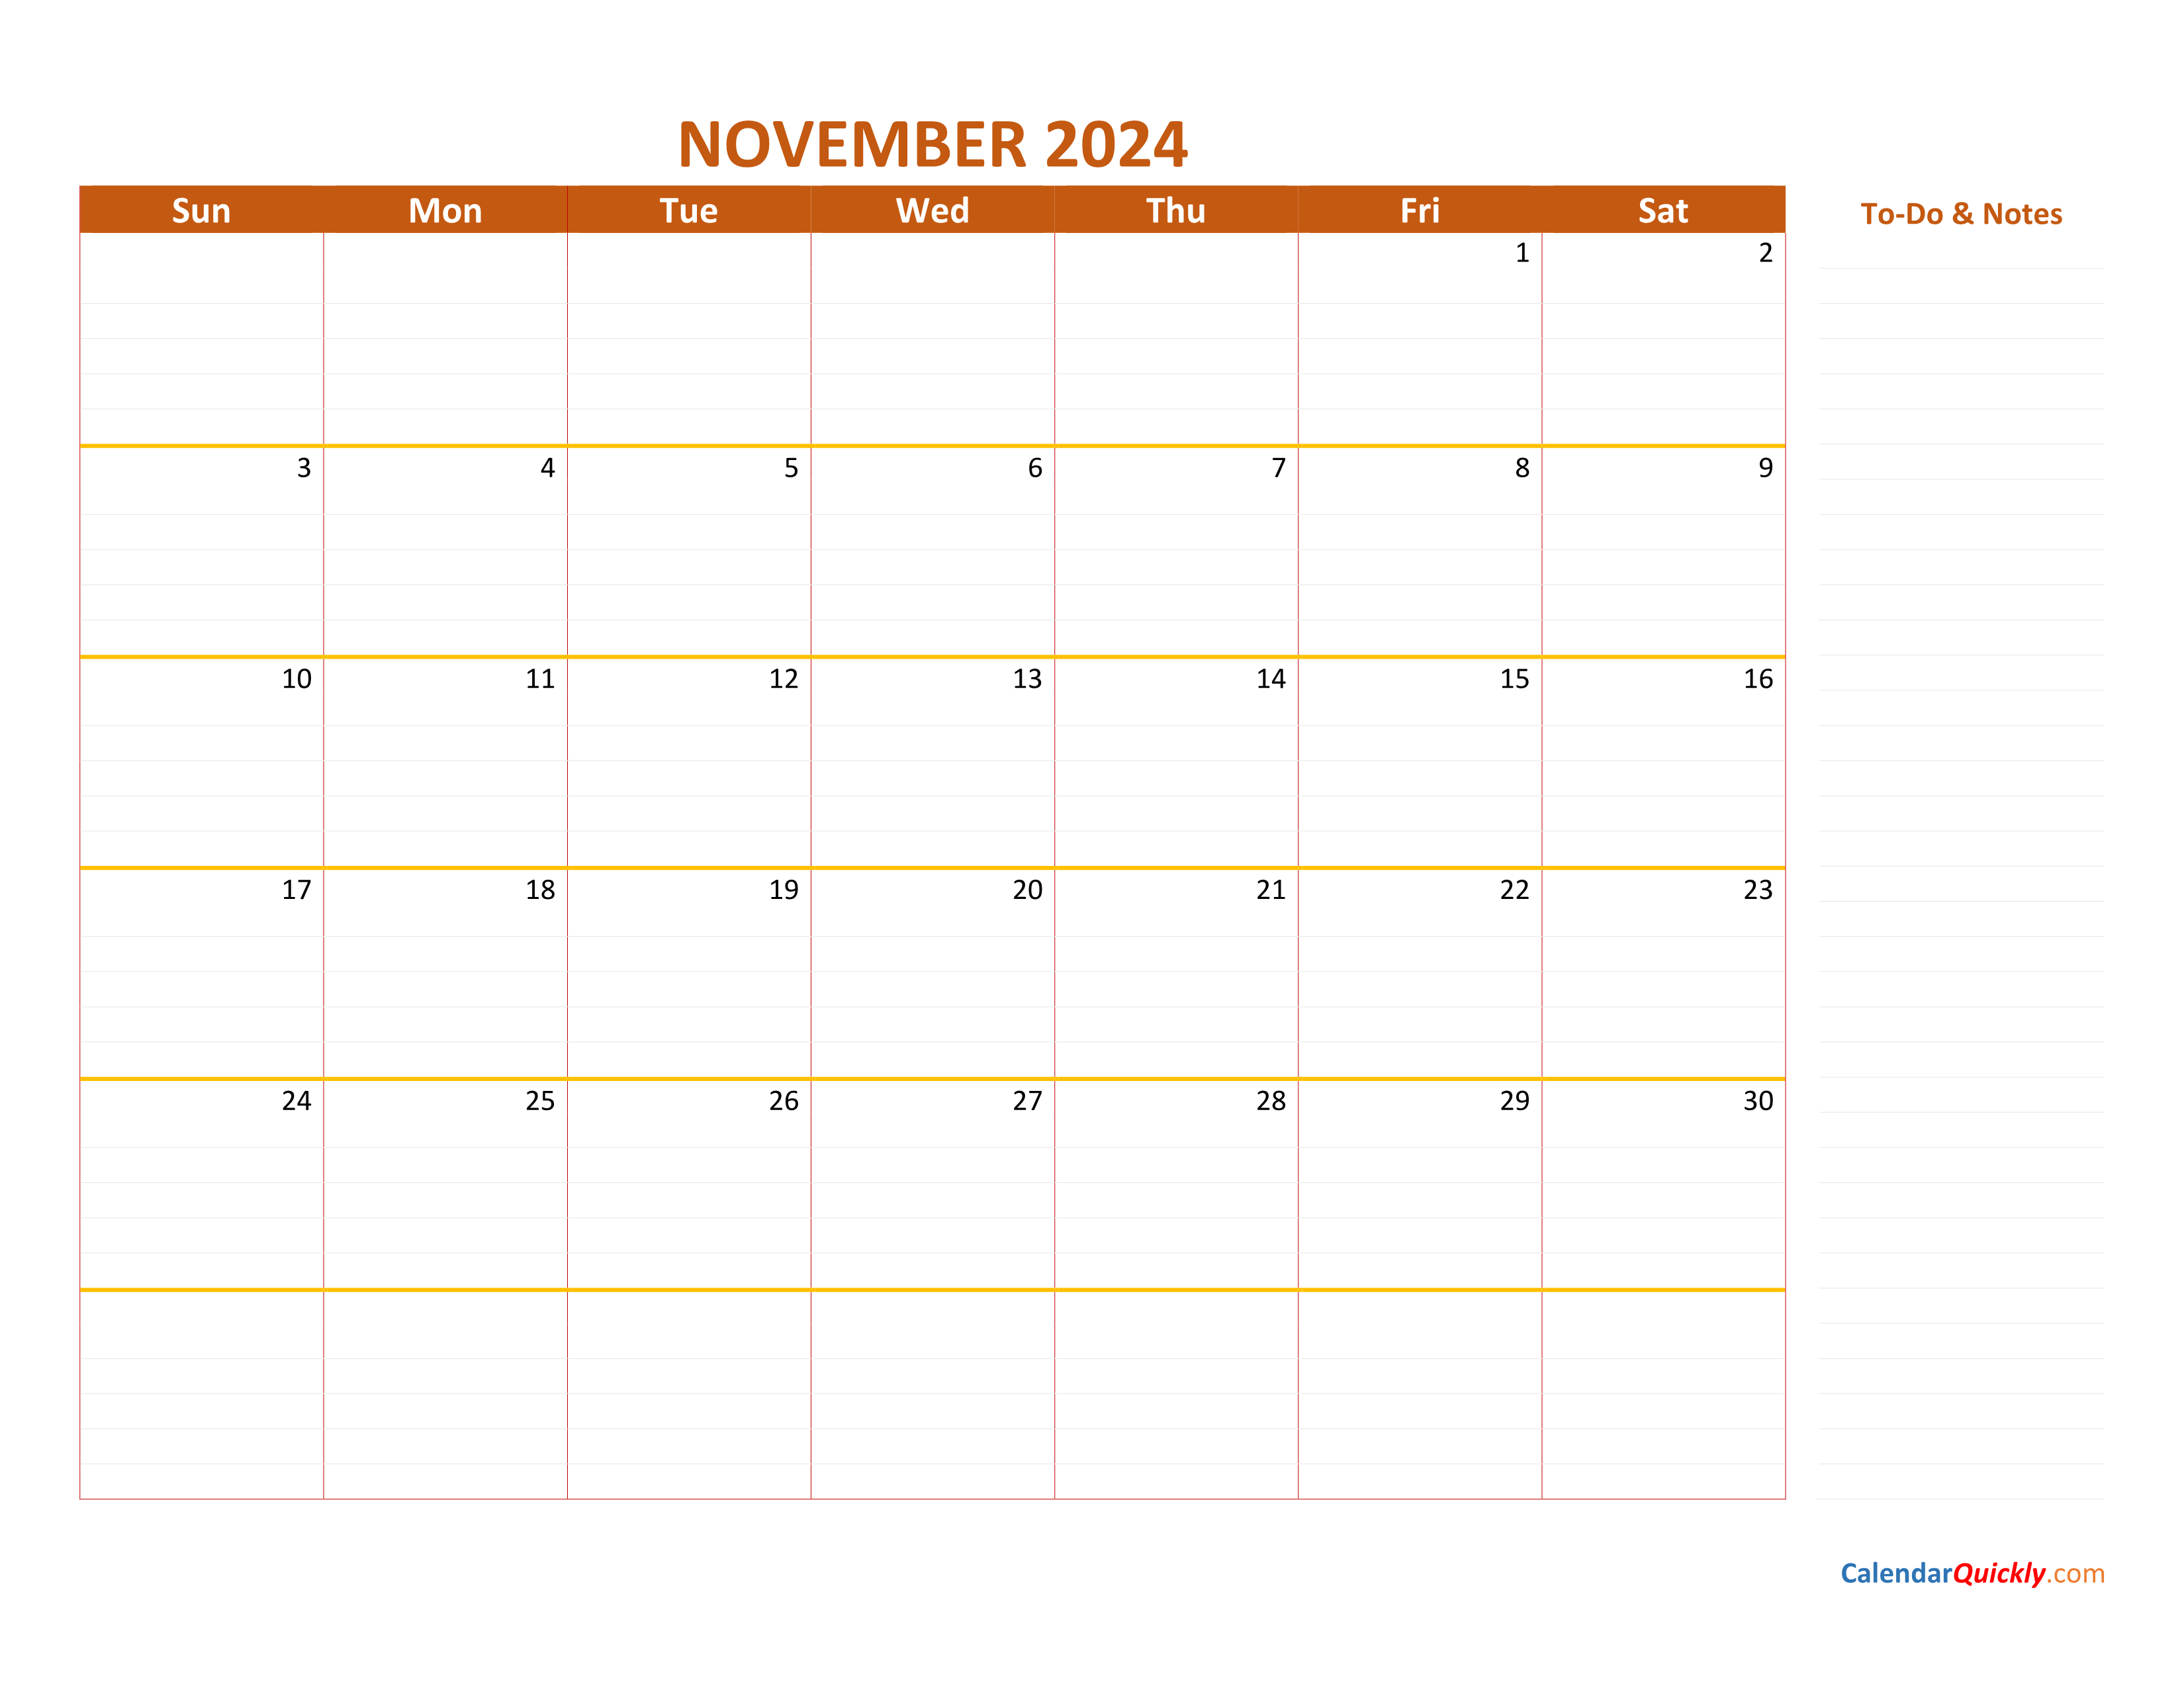 November 2024 Calendar Calendar Quickly